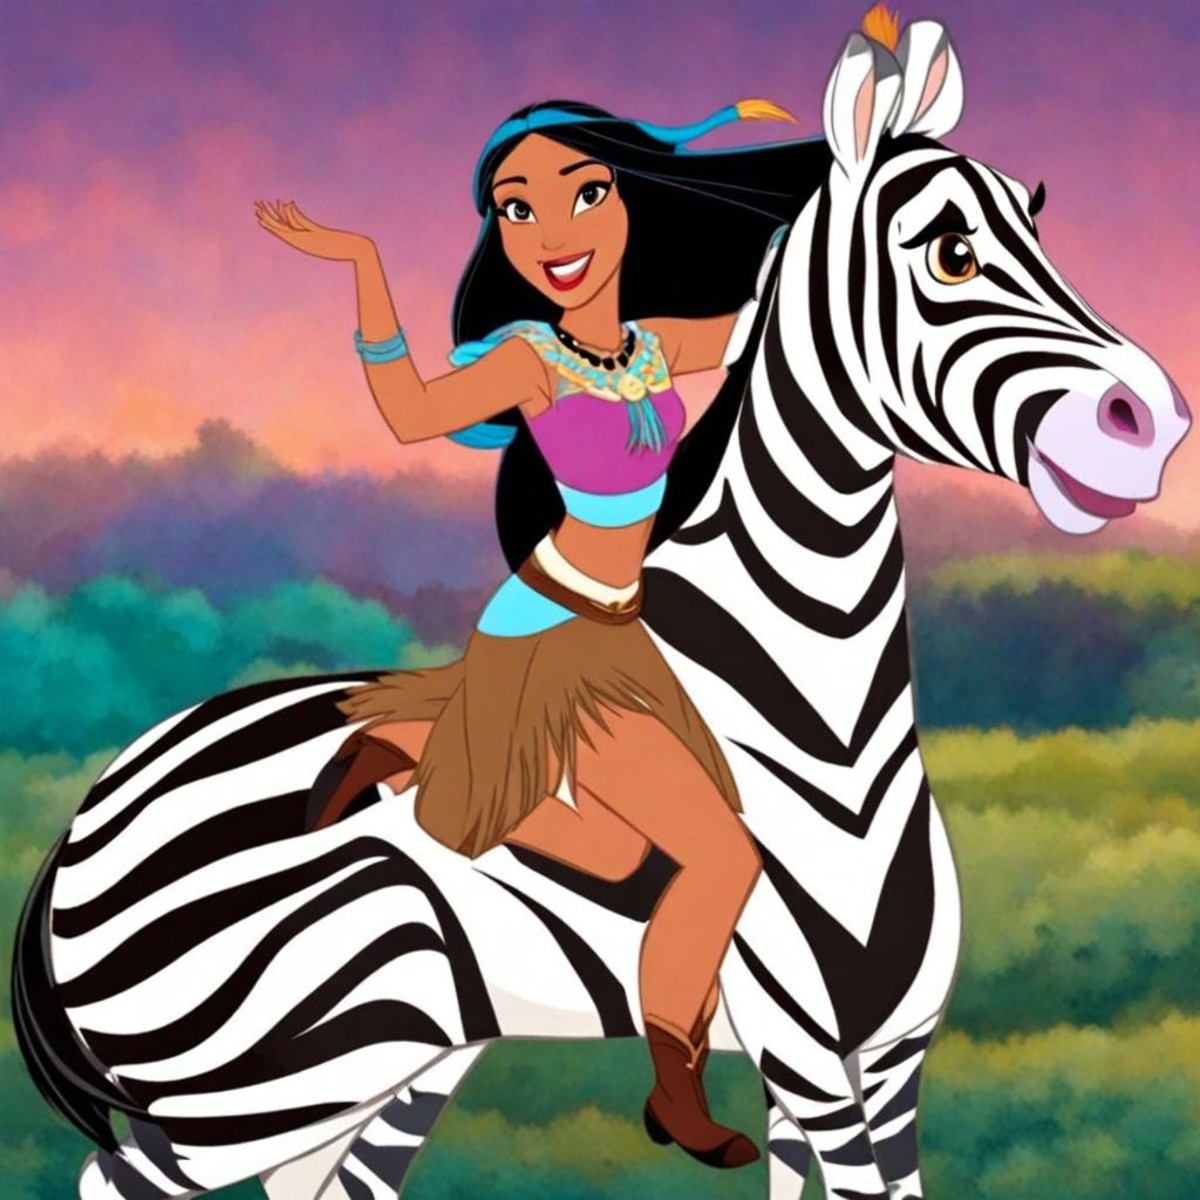 Pocahontas riding a Zebra  DreamDisPix style <lora:SDXL-DreamDisPix-Lora-r32:0.8>